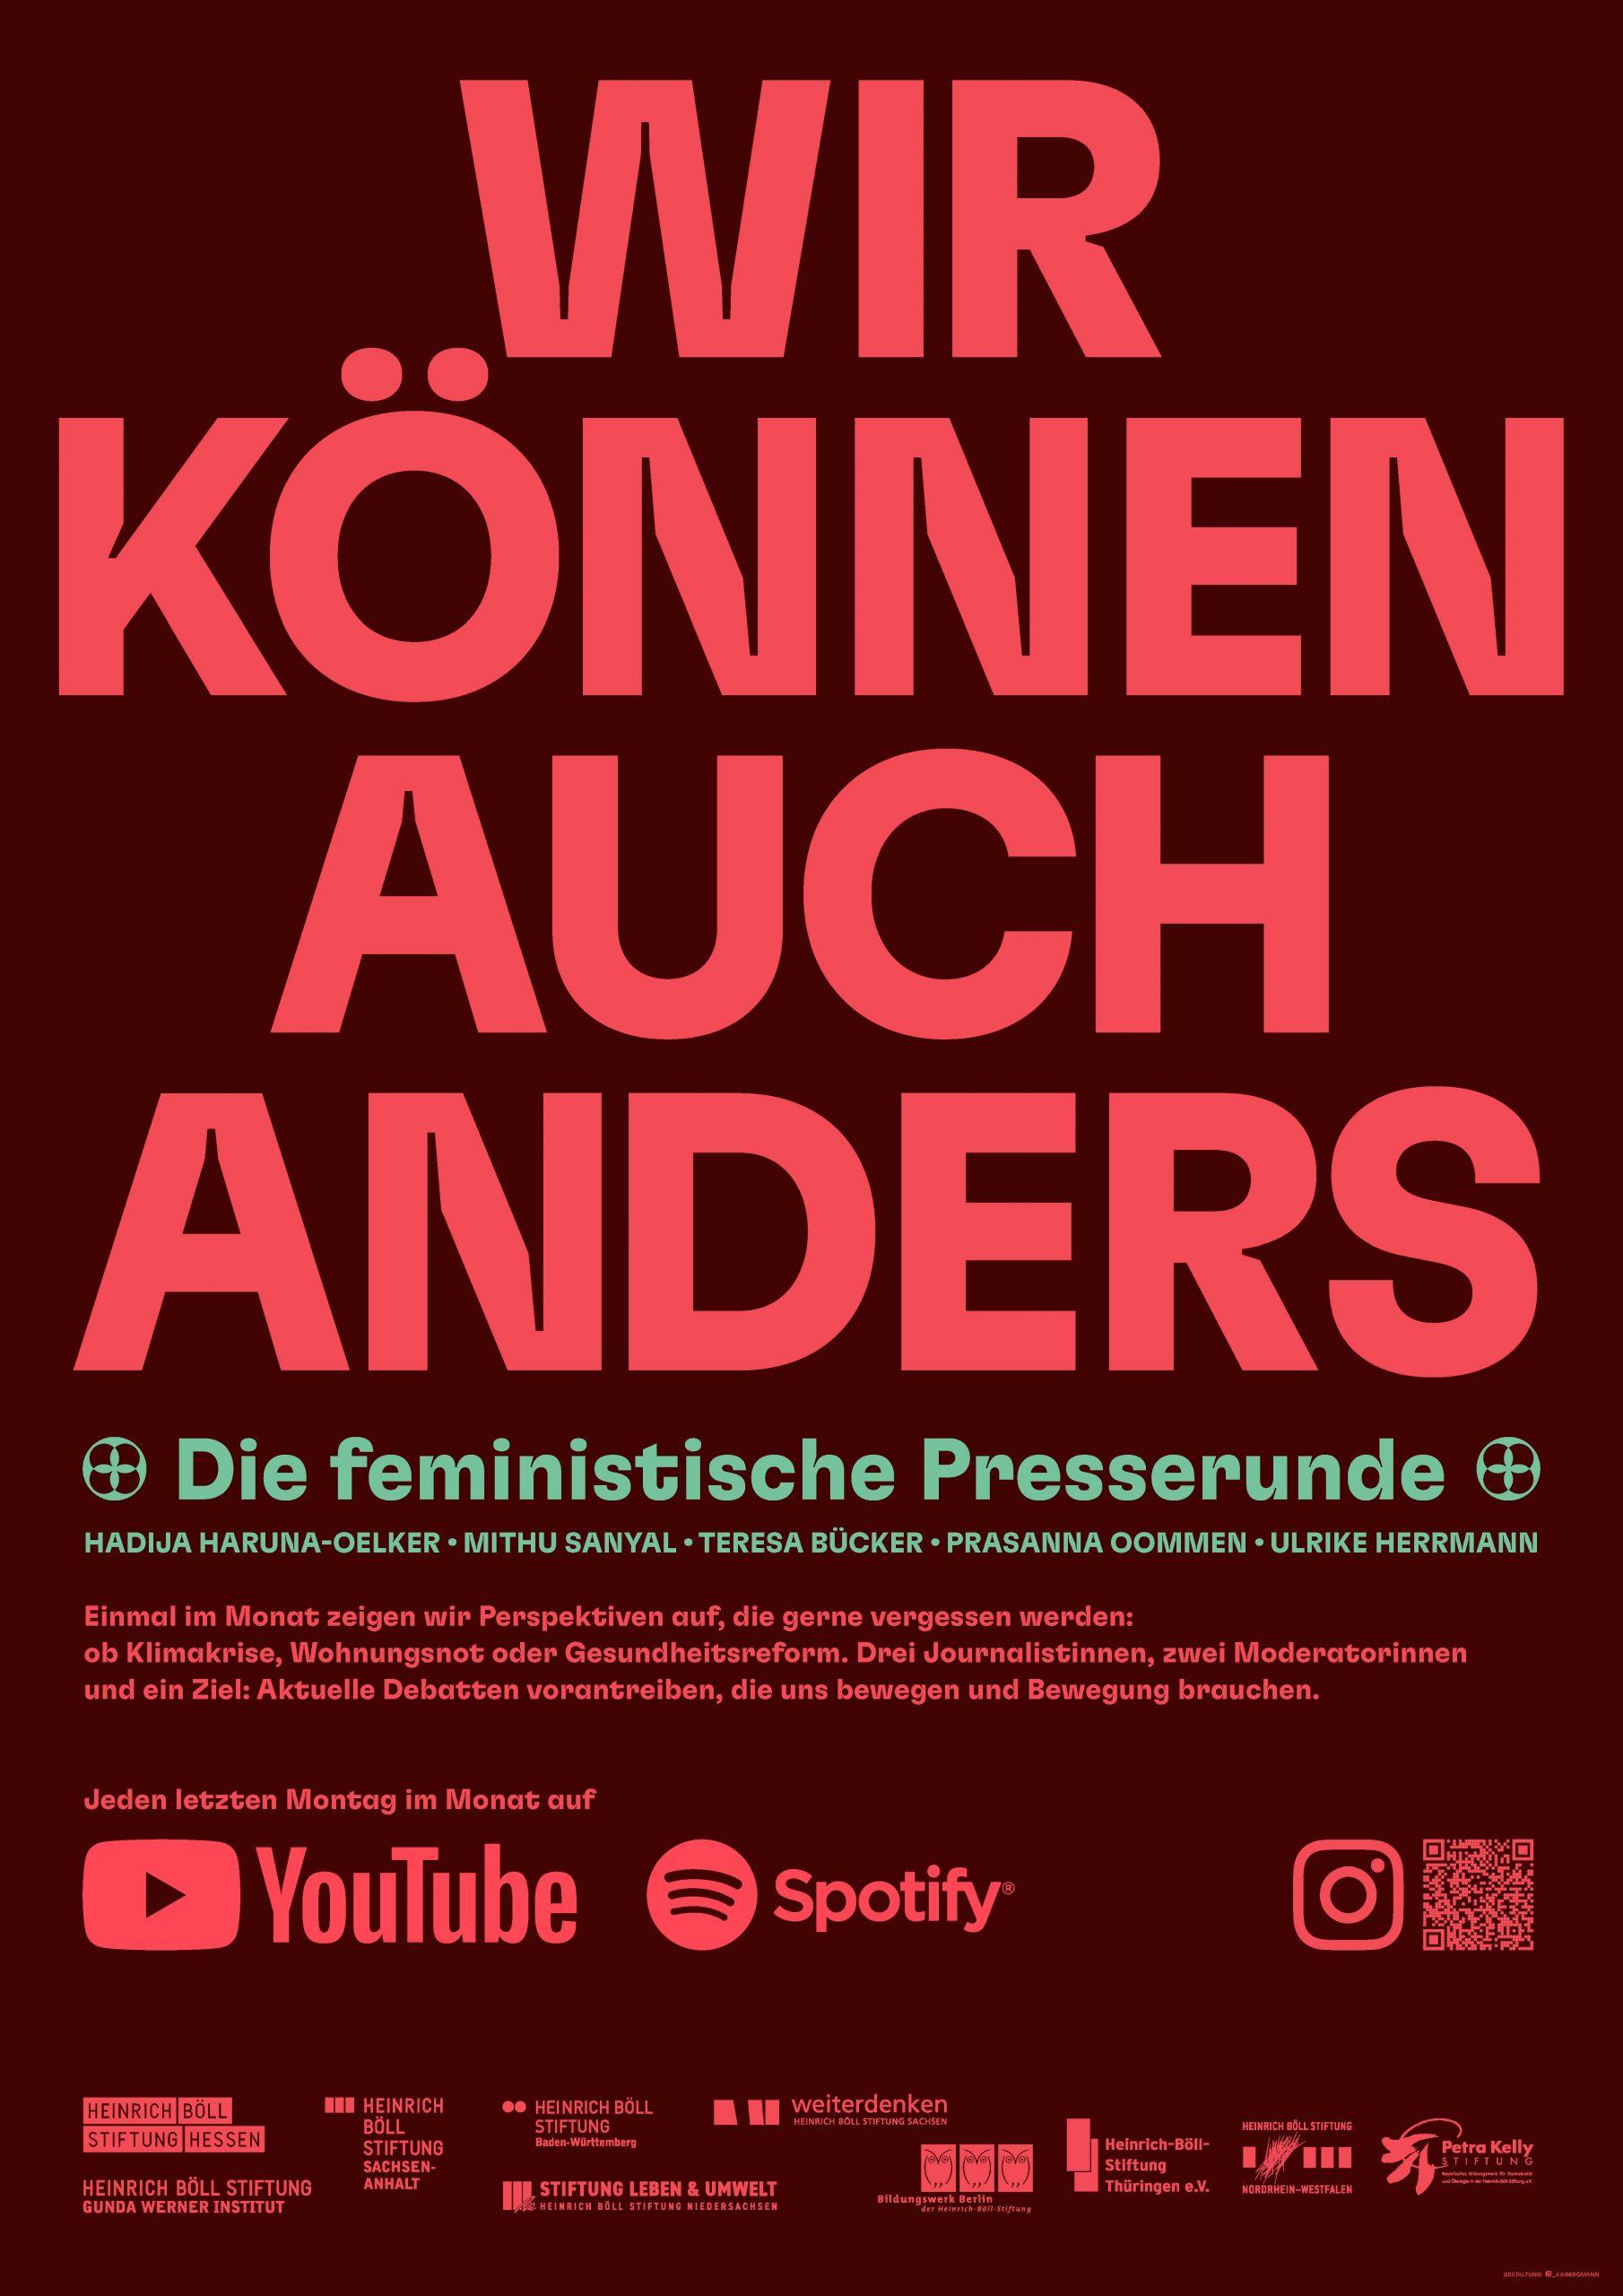 Plakat zur Feministischen Presserunde